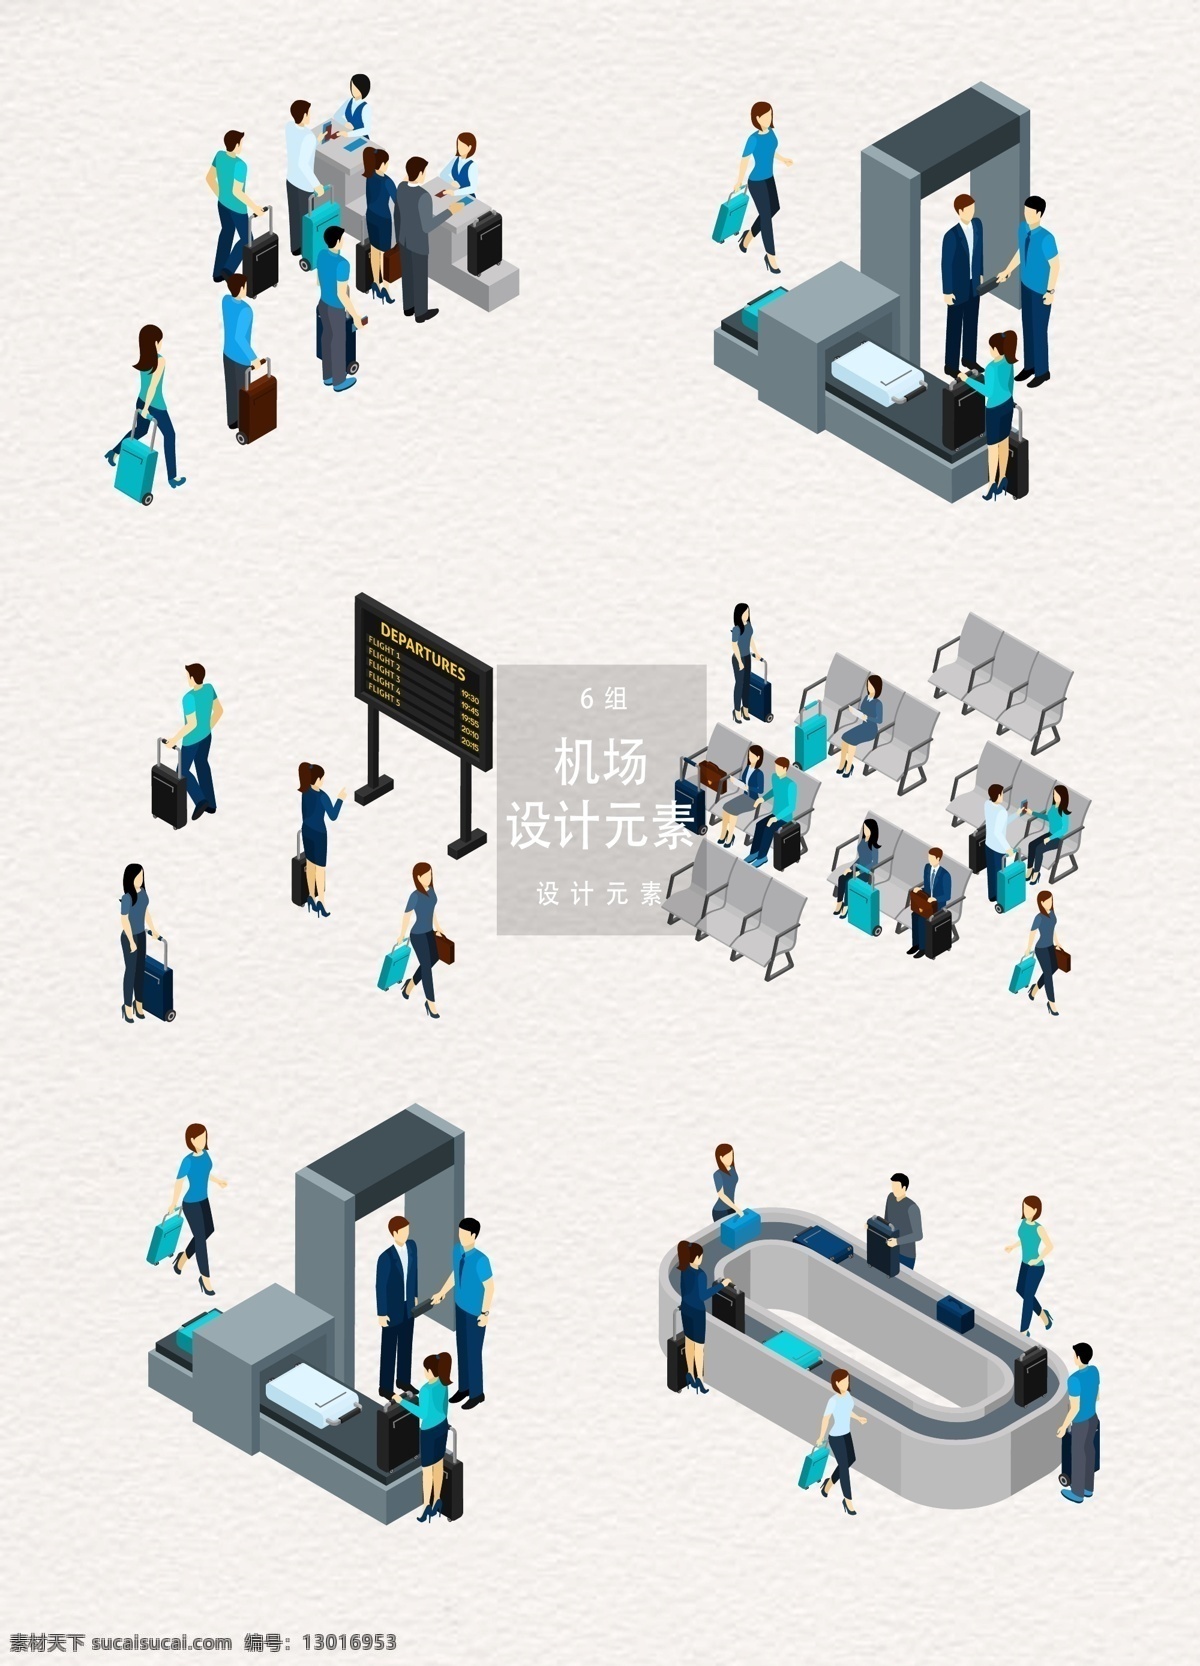 机场 登机 准备 插画 元素 设计元素 度假 旅行 矢量素材 机场登机 登机准备 出行 旅游度假 过检